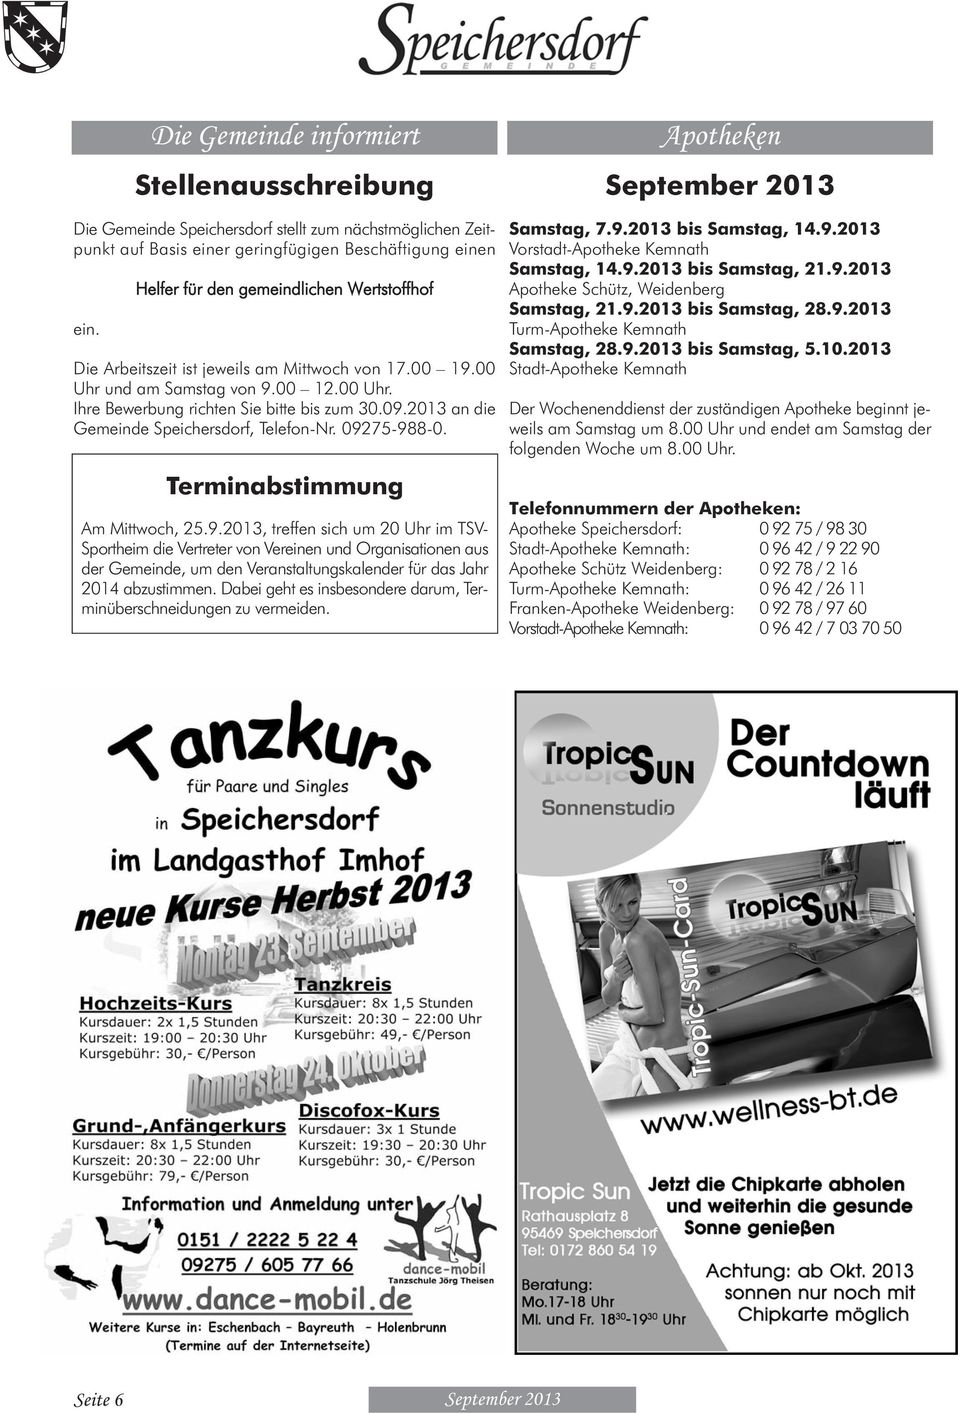 2013 an die Gemeinde Speichersdorf, Telefon-Nr. 092